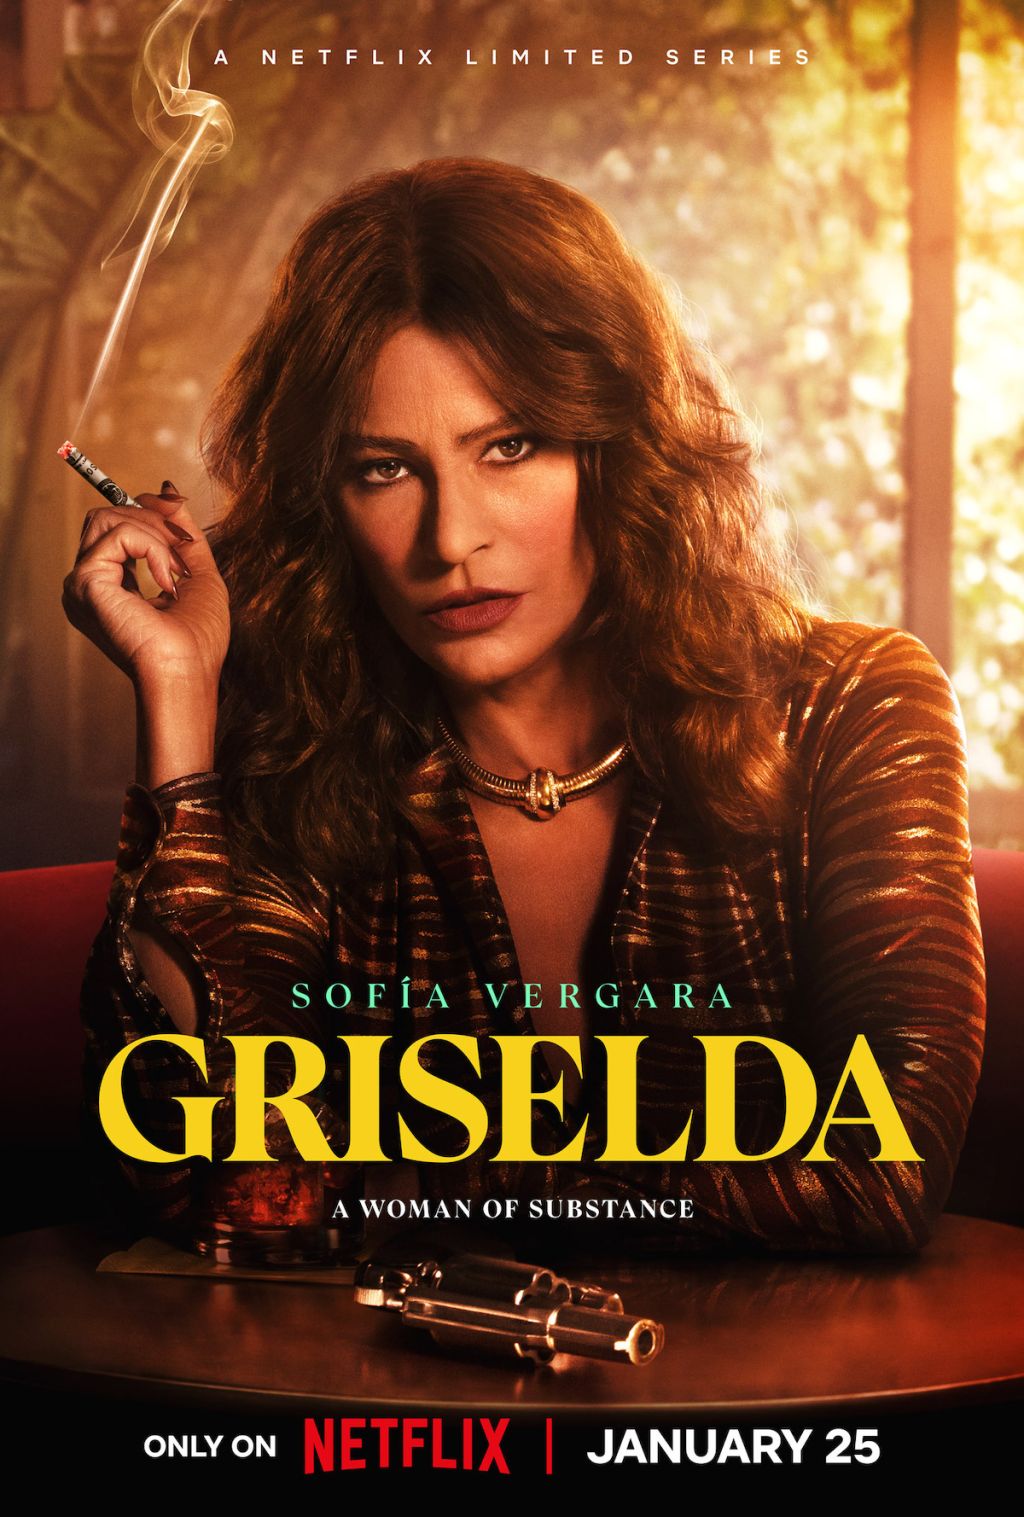 Griselda key art and trailer images